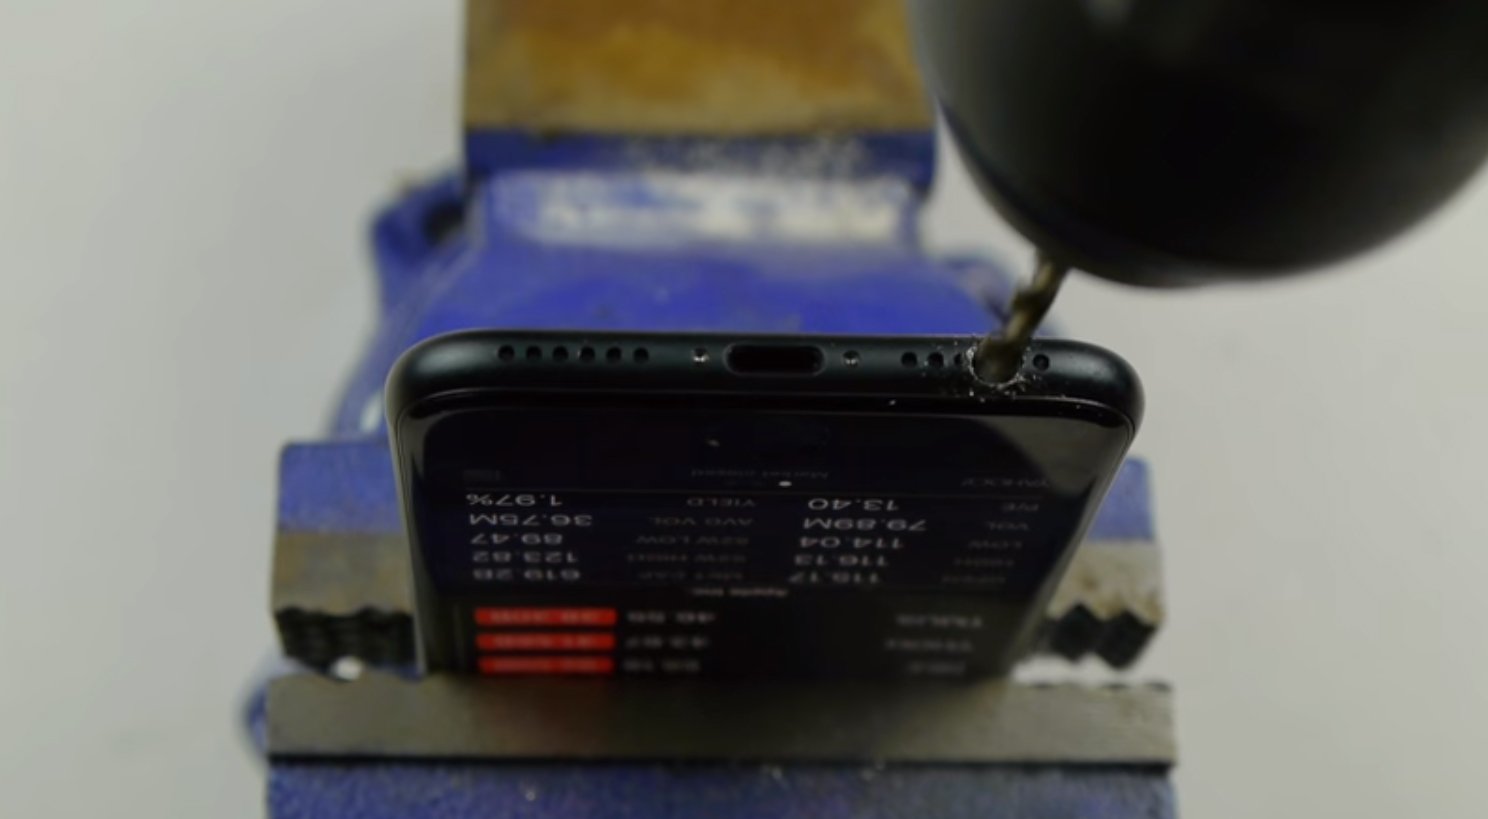 ยูทูปเบอร์เกรียนใช้สว่านเจาะรูบน iPhone 7 ประชดข้อหาไม่มีช่องเสียบหูฟัง!